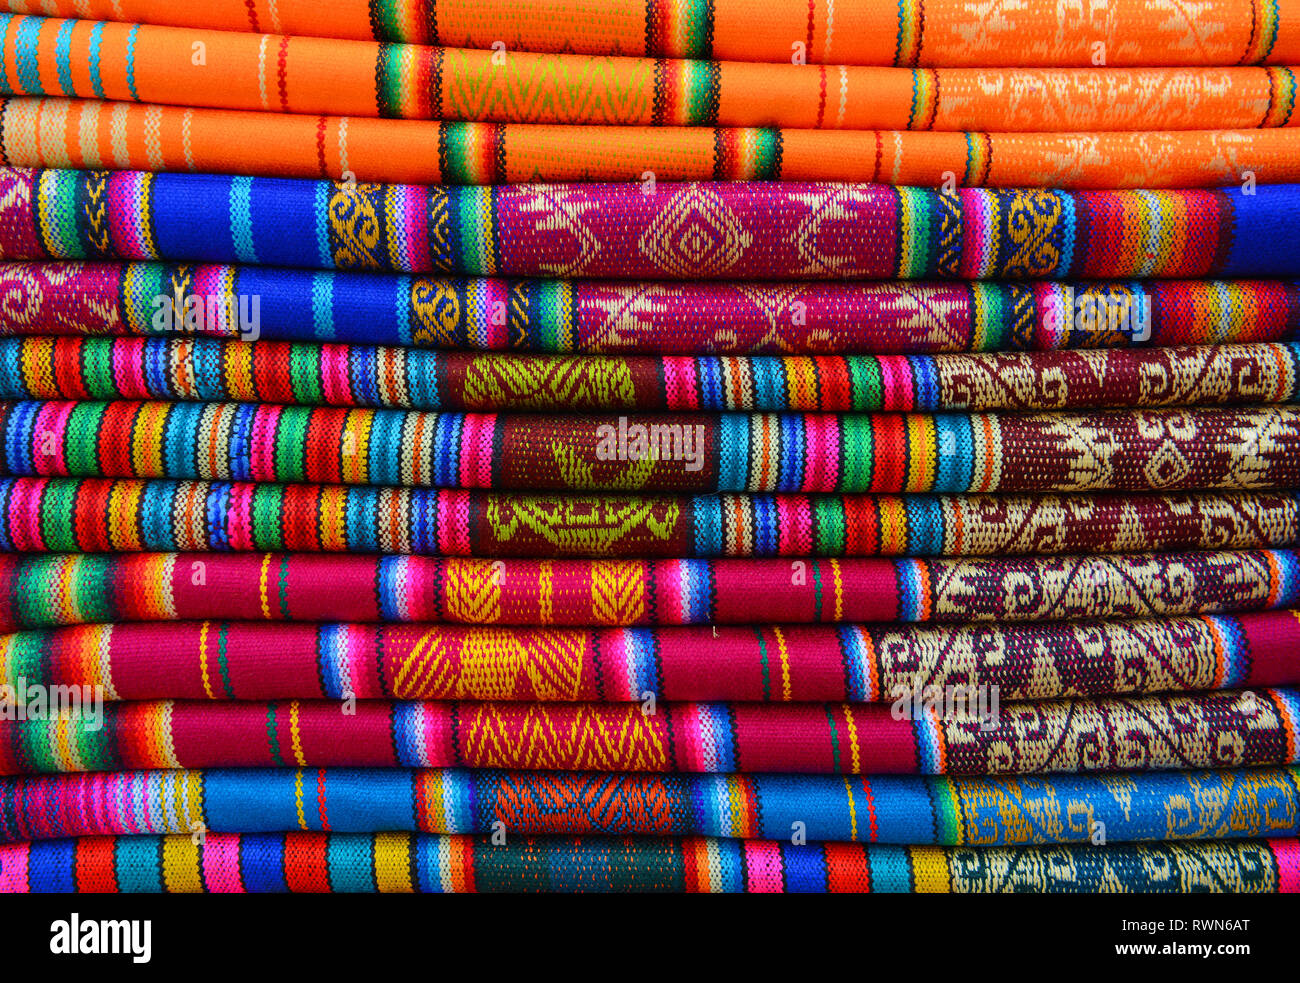 Bunter Haufen von Textilien auf dem einheimischen Markt von Otavalo, Ecuador. Diese Textilien können in den Anden gefunden werden: Peru, Bolivien, Ecuador. Stockfoto